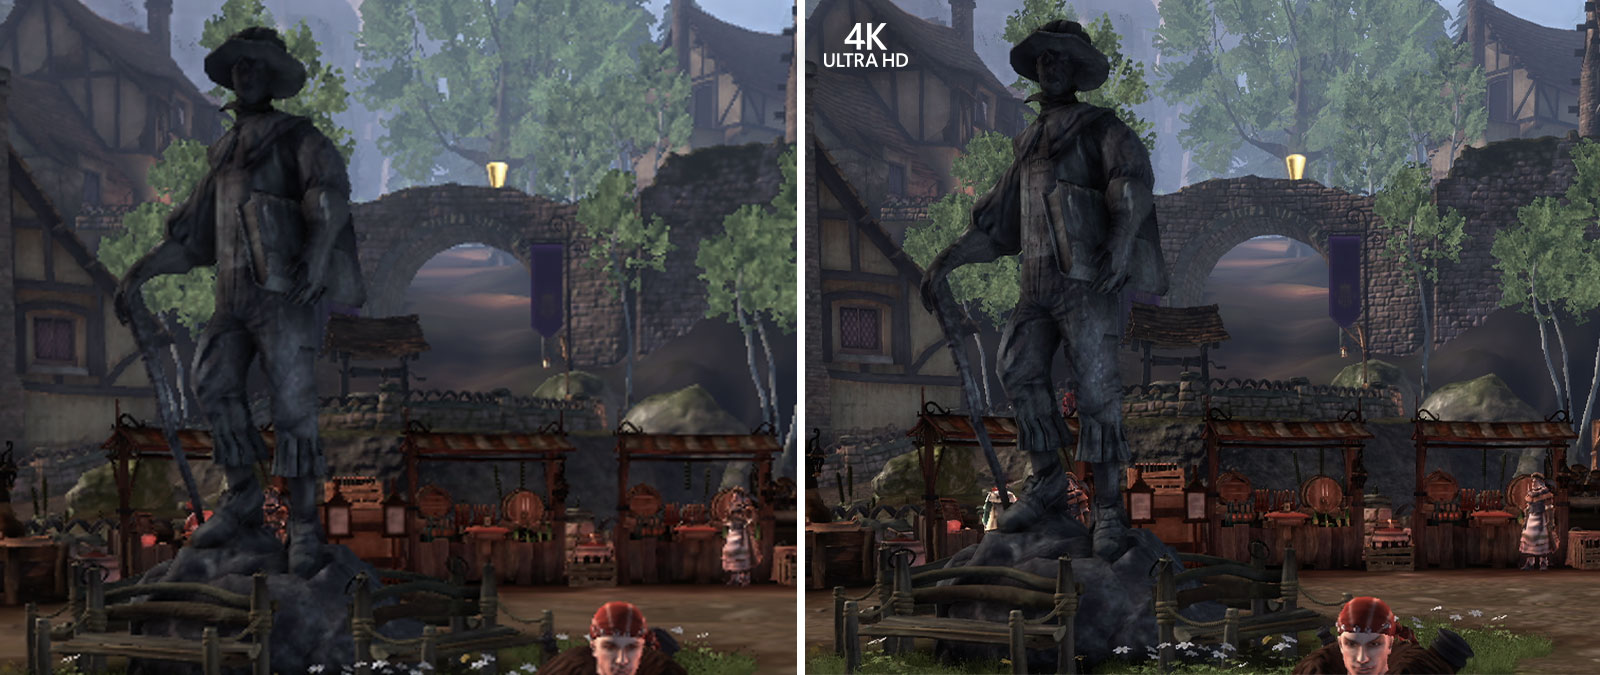 4K Ultra HD, vergrößerte Vergleichsscreenshots von Fable Anniversary, damit die Details im Hintergrund zu sehen sind